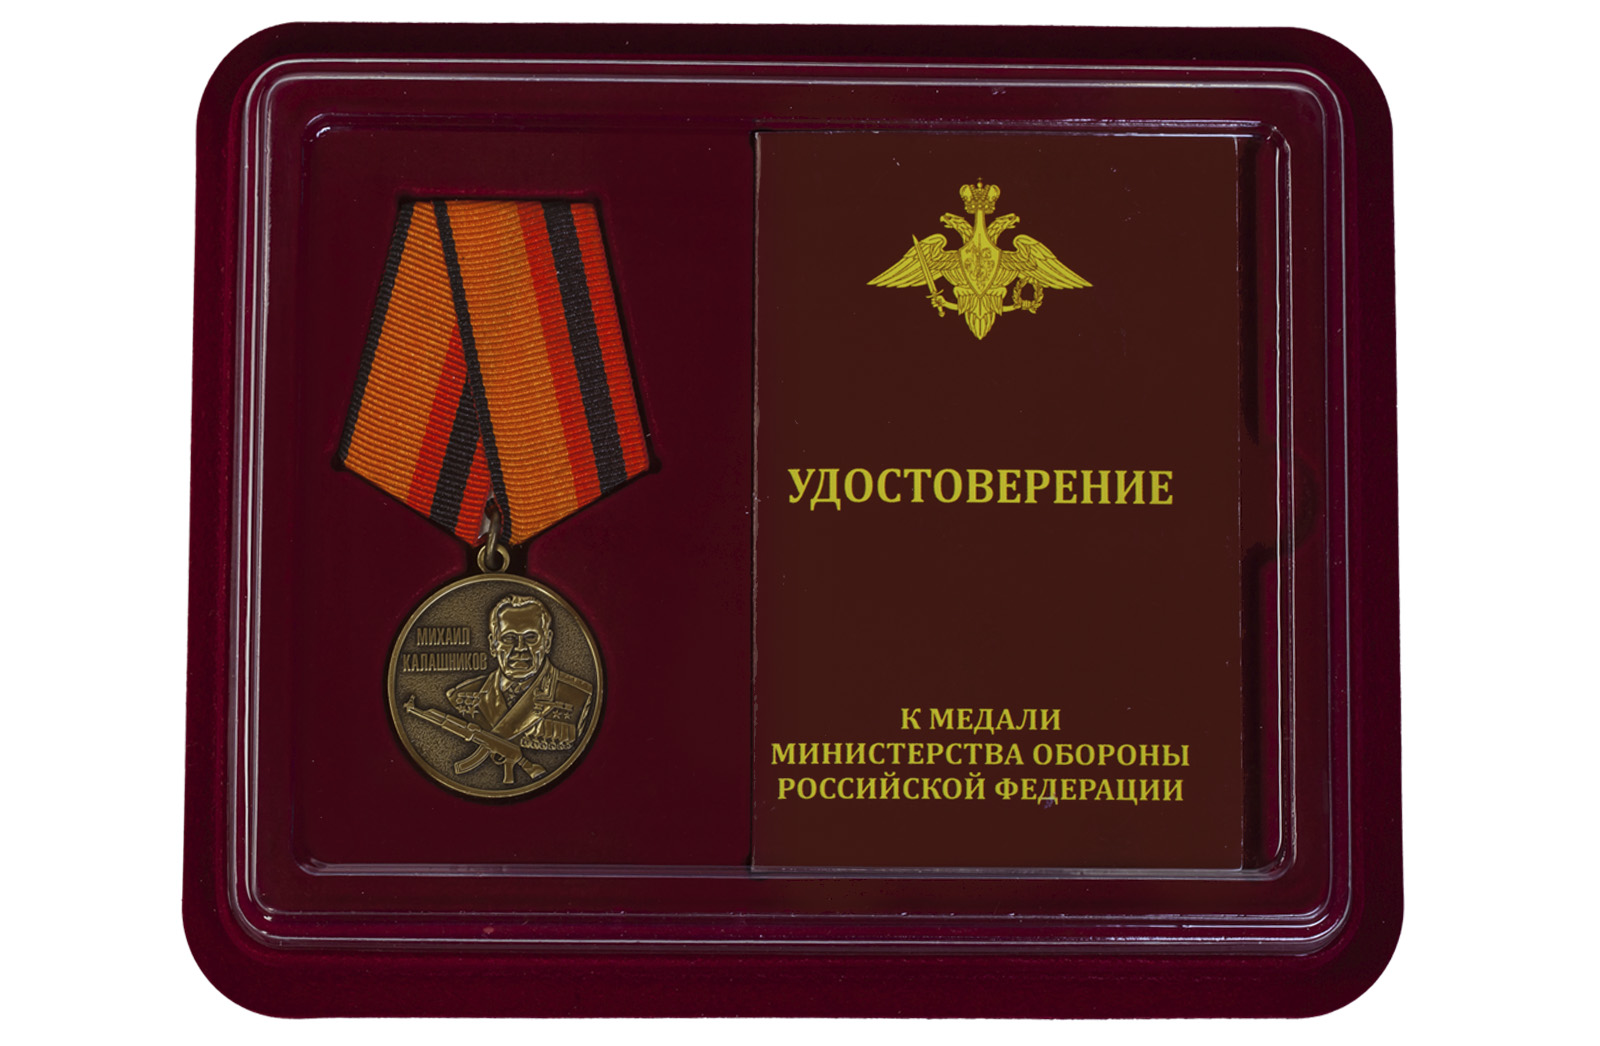 Купить медаль МО РФ Михаил Калашников выгодно онлайн